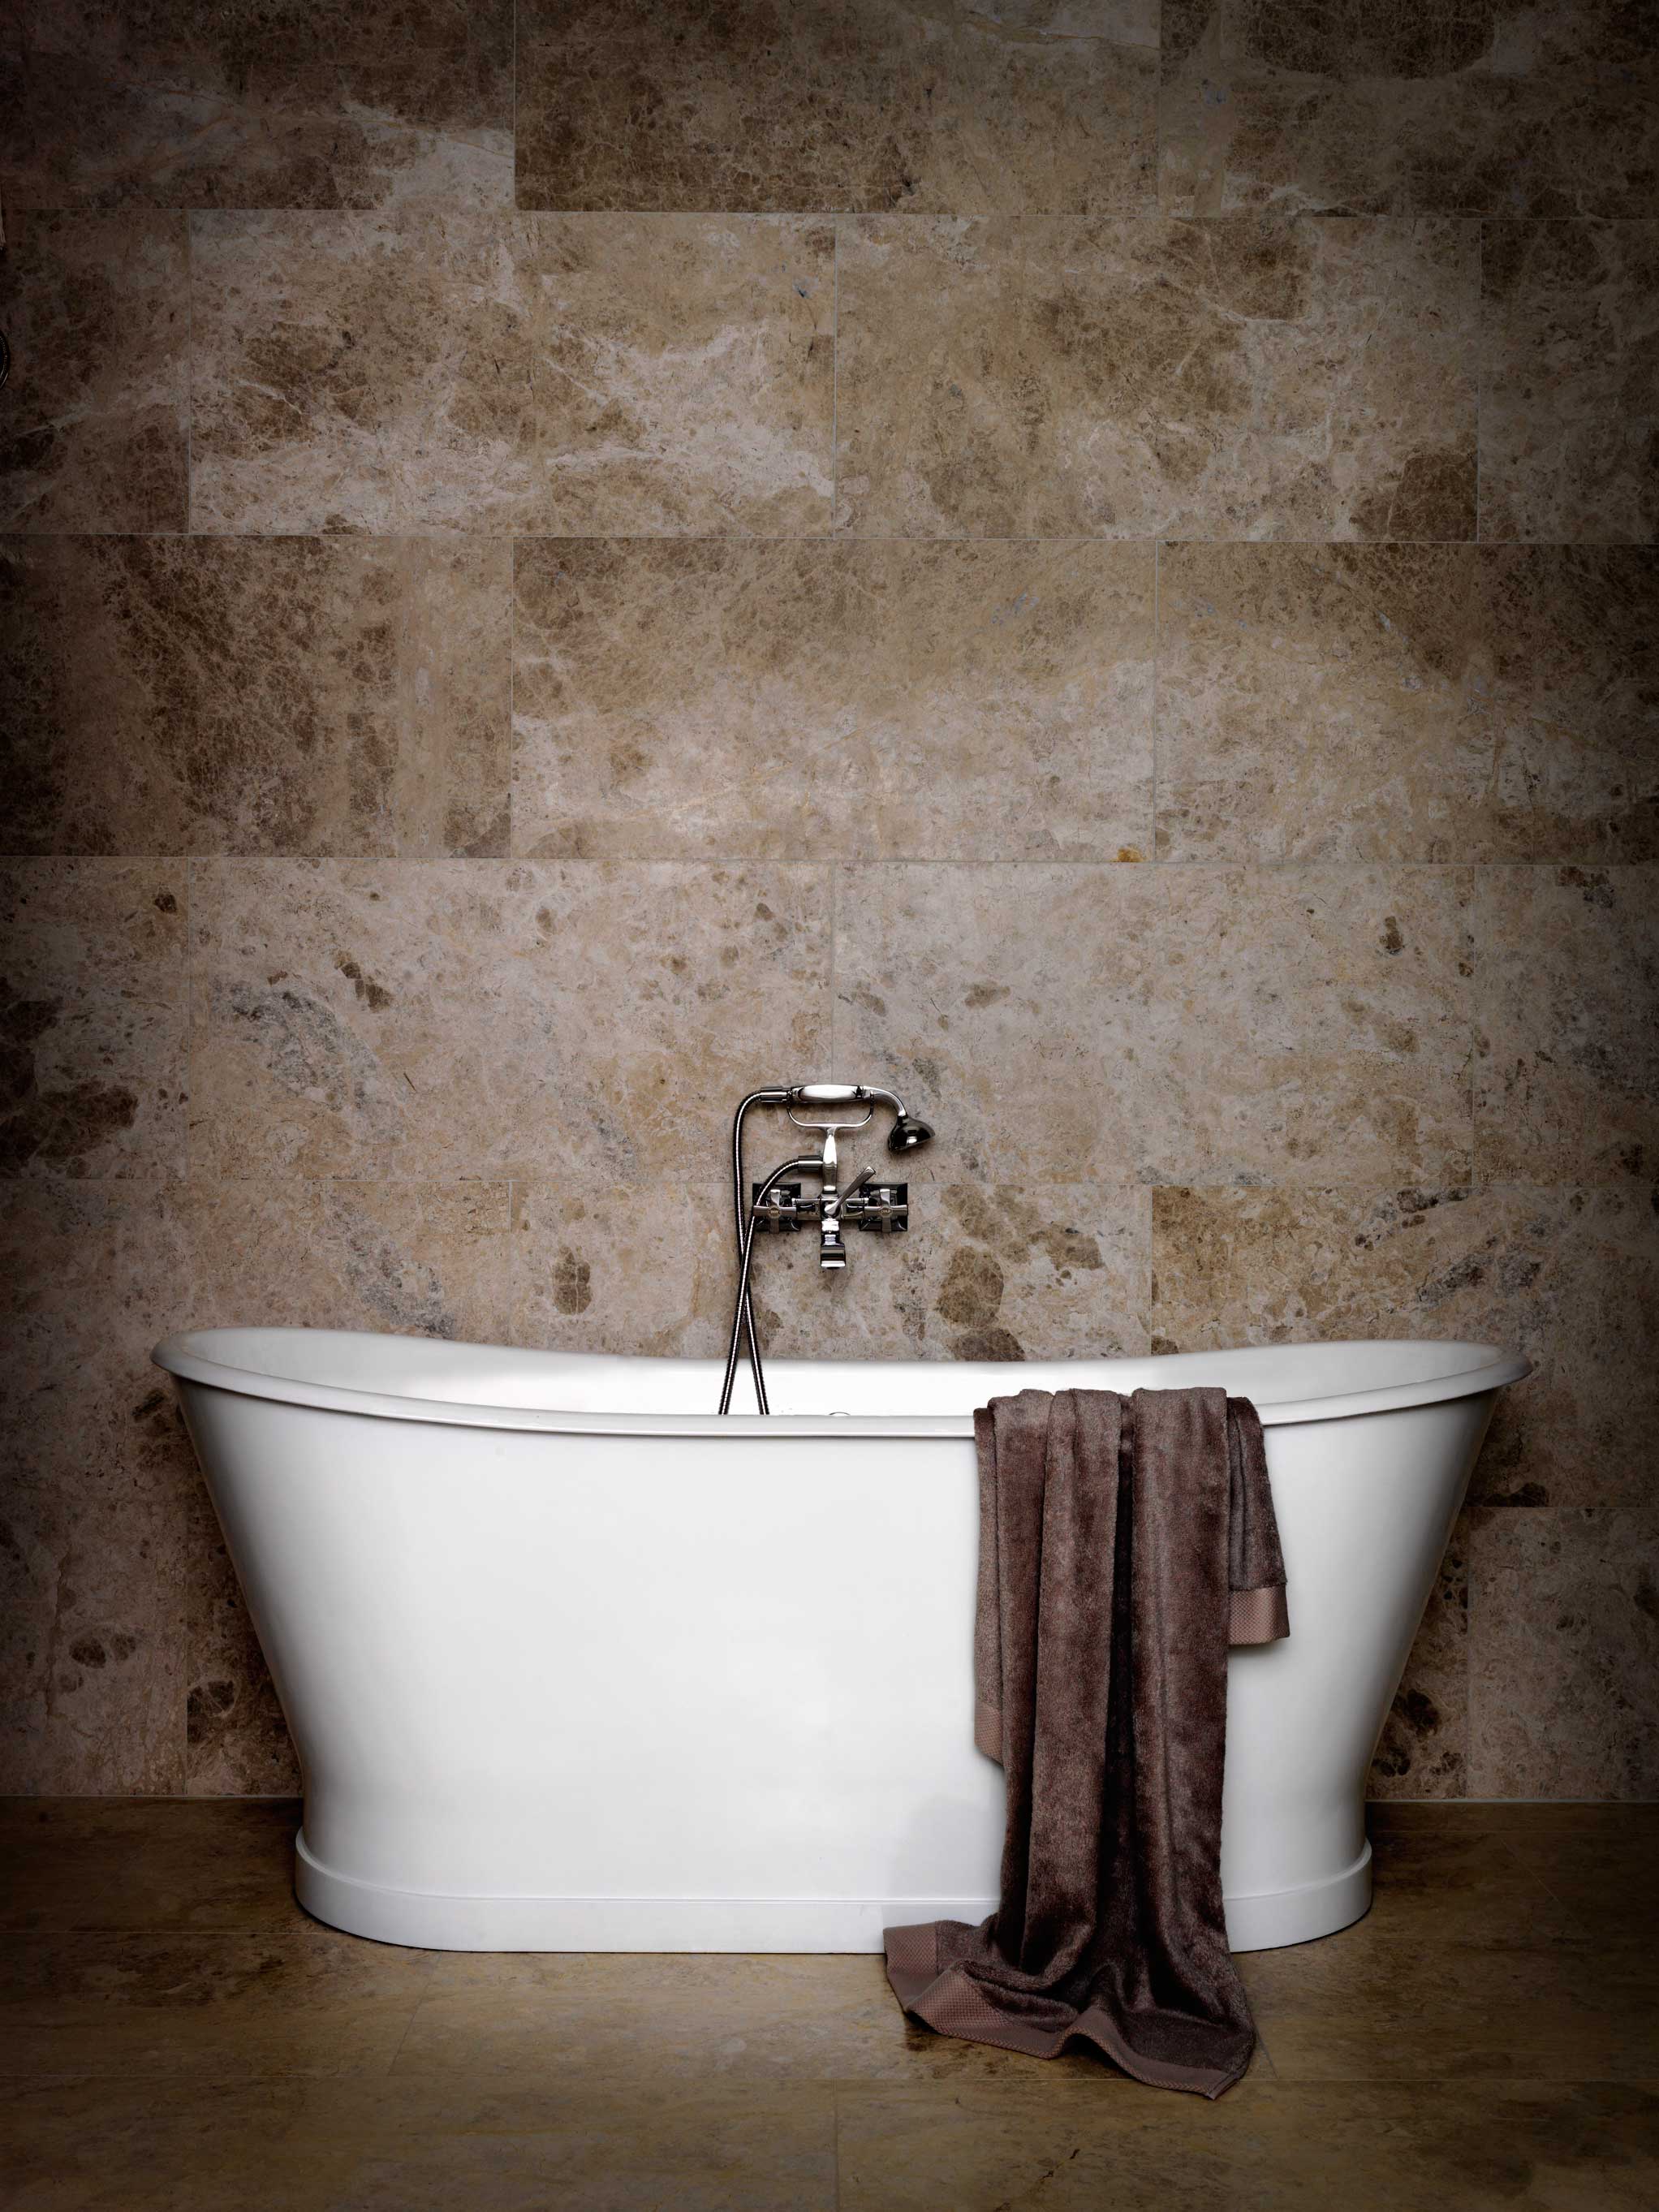 uncategorized-ravishing-natural-stone-bathroom-wall-tiles-natural-stone-bathroom-accessories-natural-stone-bathroom-accessories-natural-stone-bathroom-wall-natural-stone-bathroom-wall-tile-murals